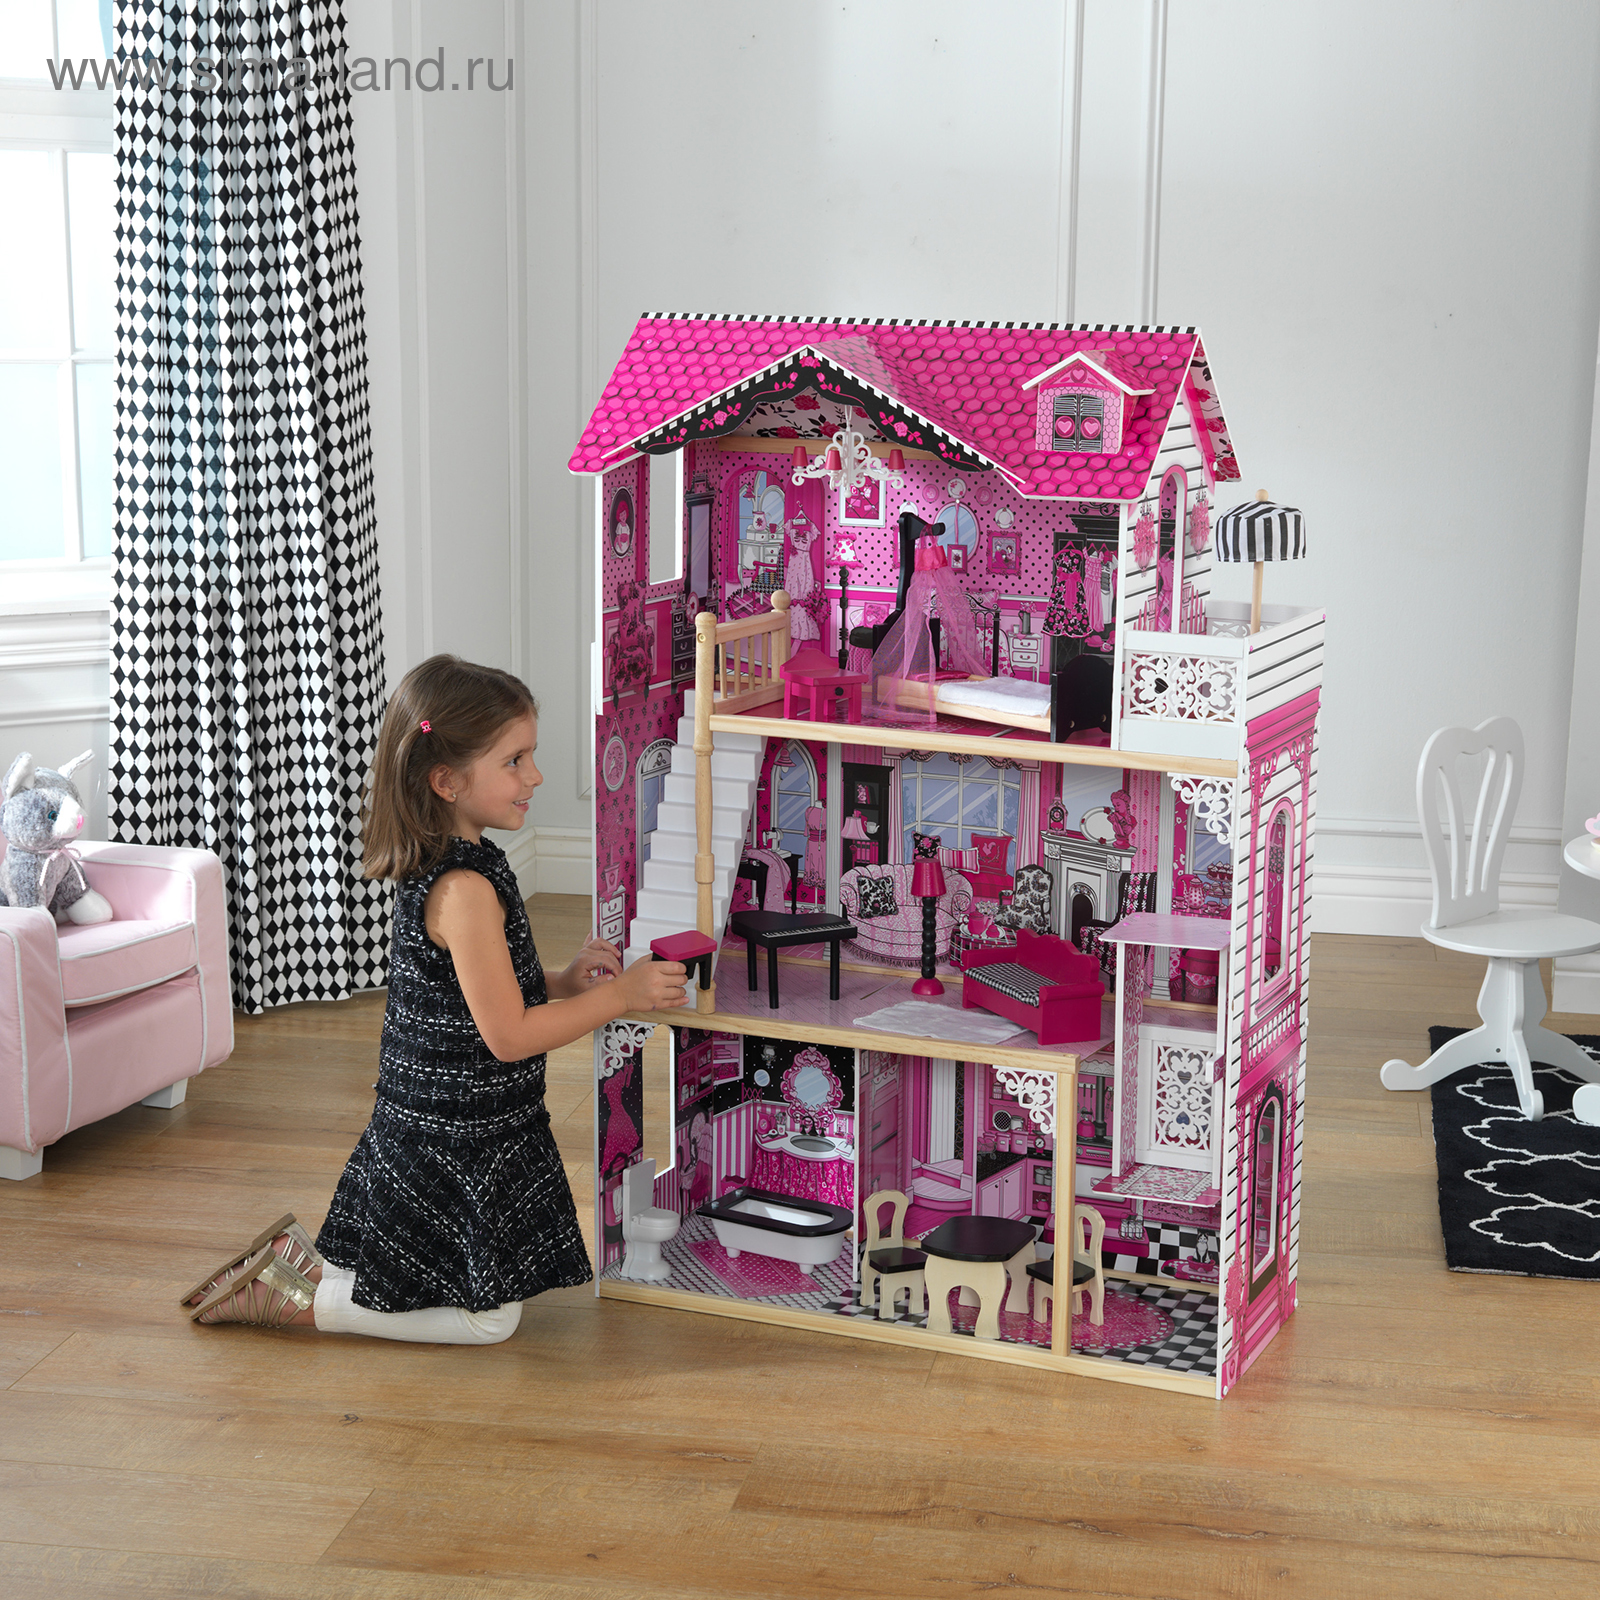 100 000 изображений по запросу Дом barbie доступны в рамках роялти-фри лицензии